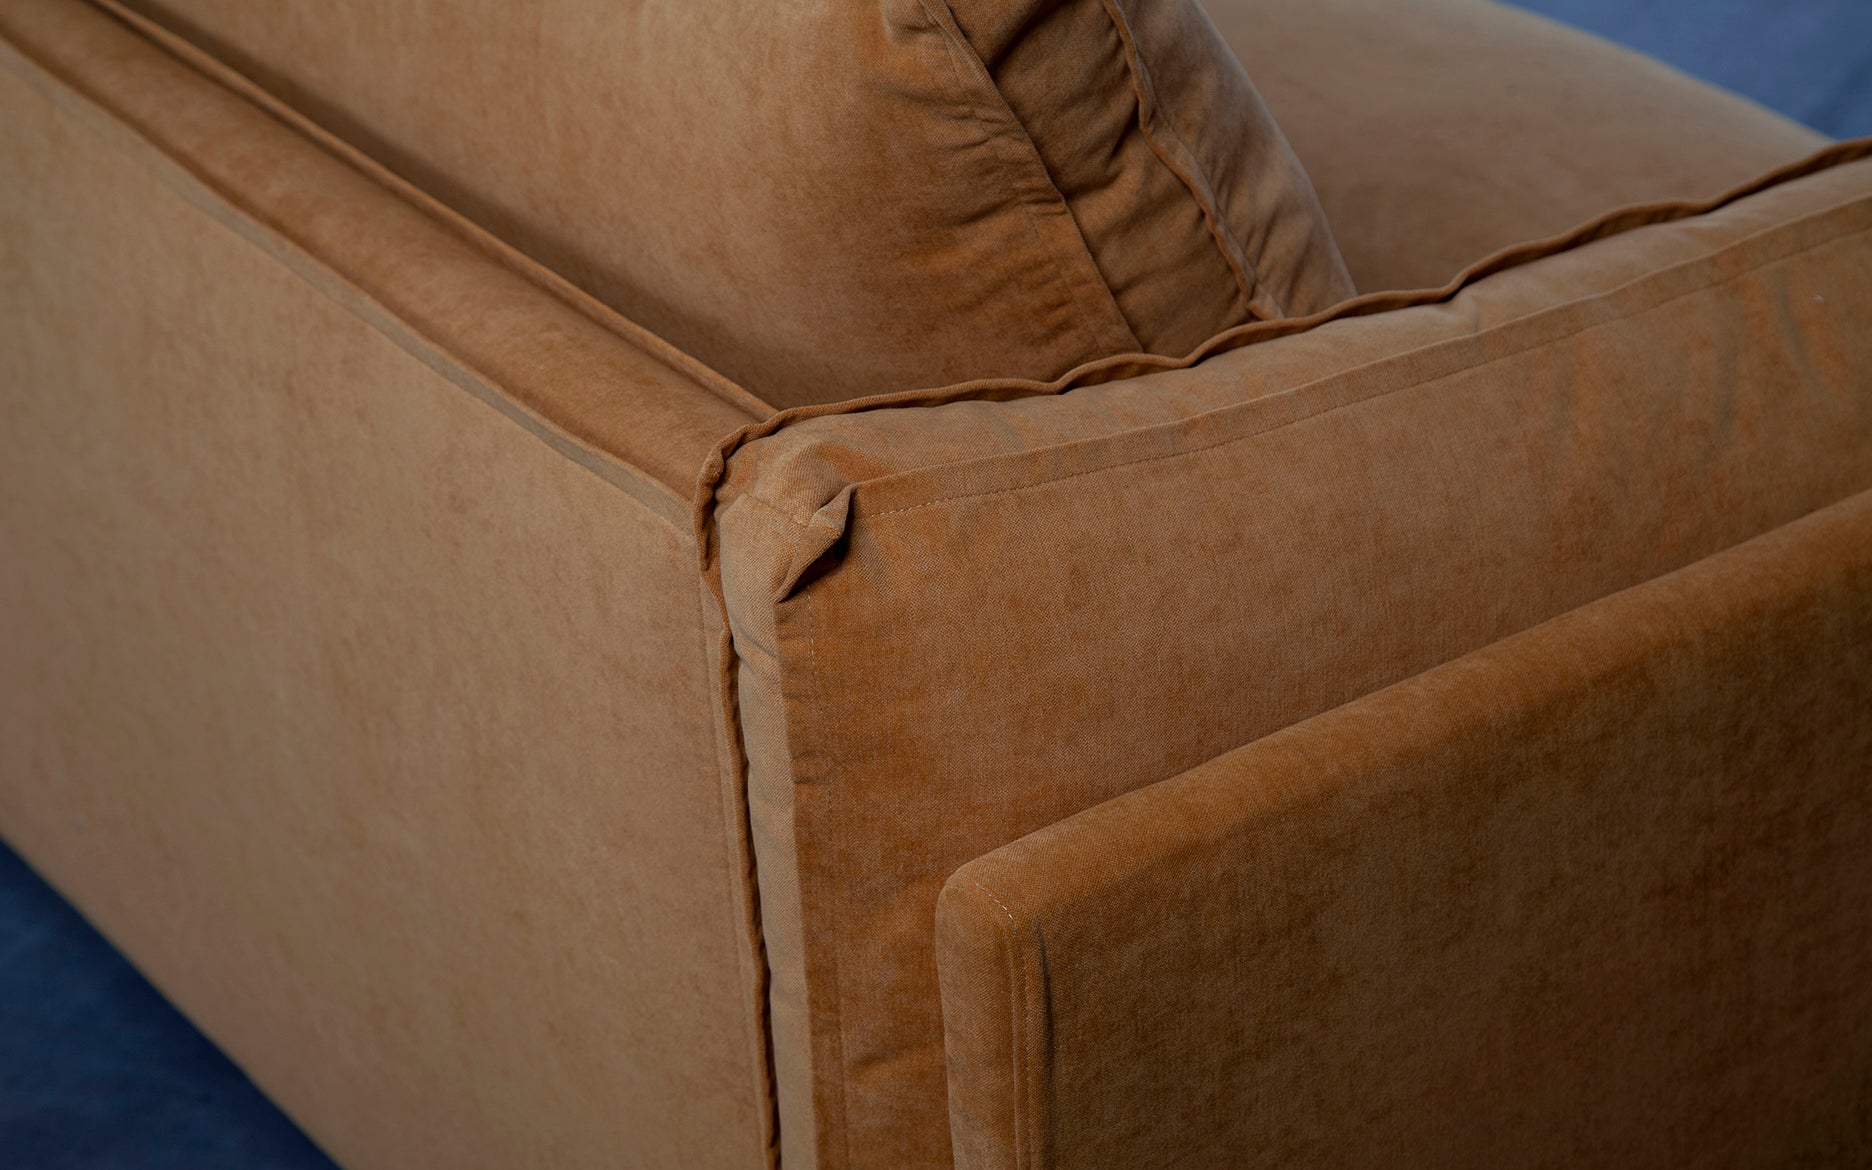 Sofa Matia, customizável